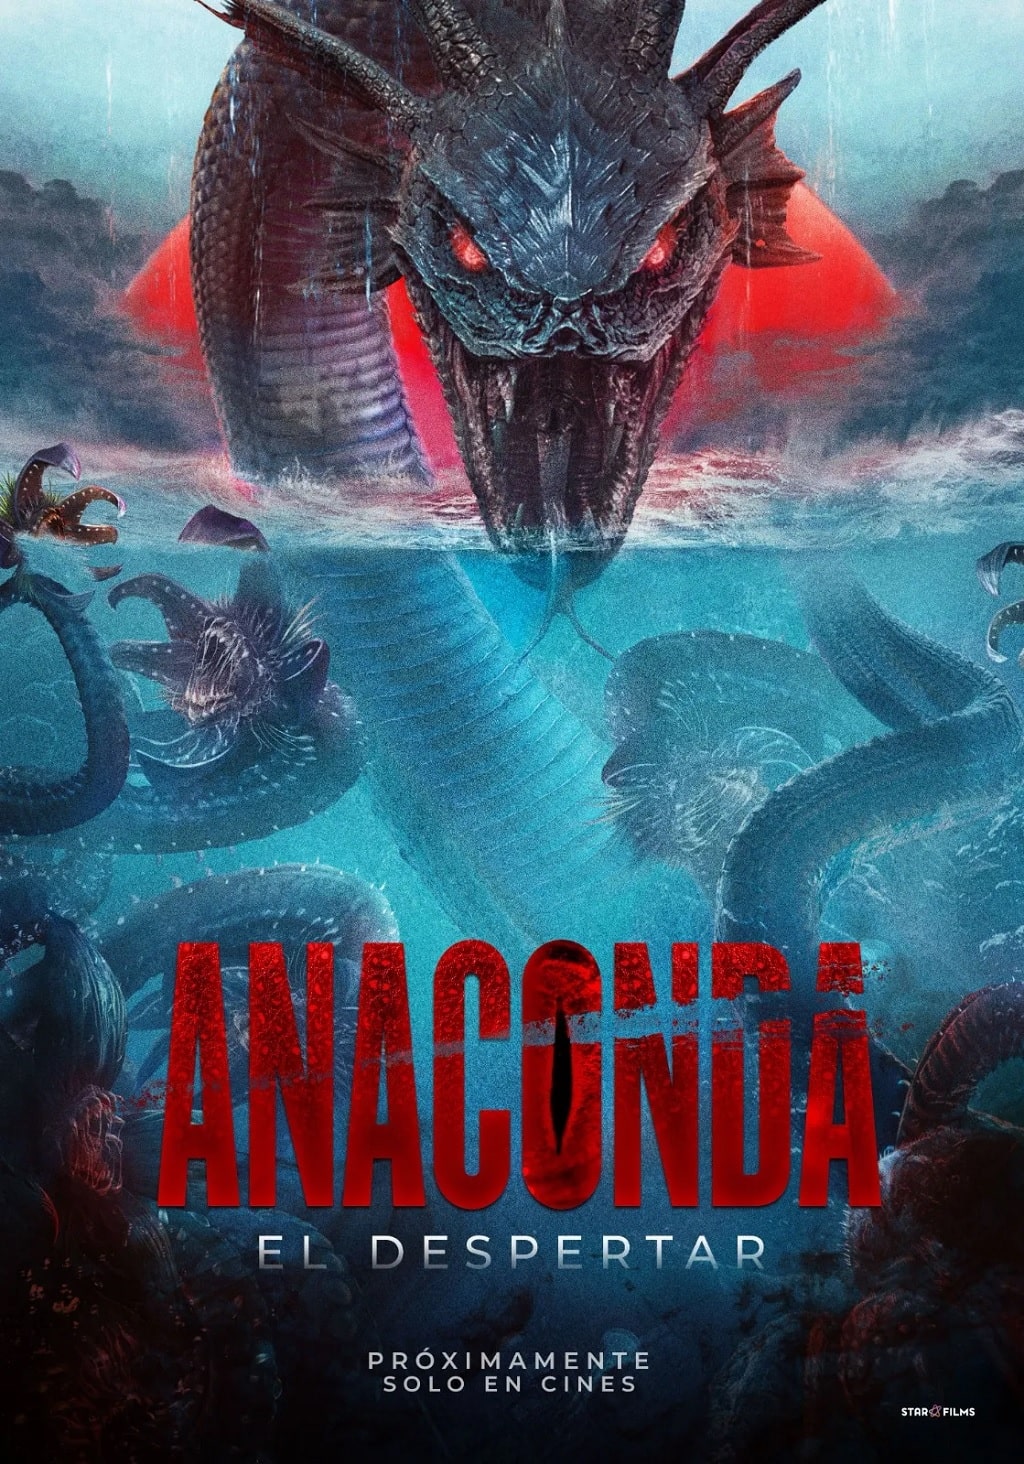 Anaconda: El despertar